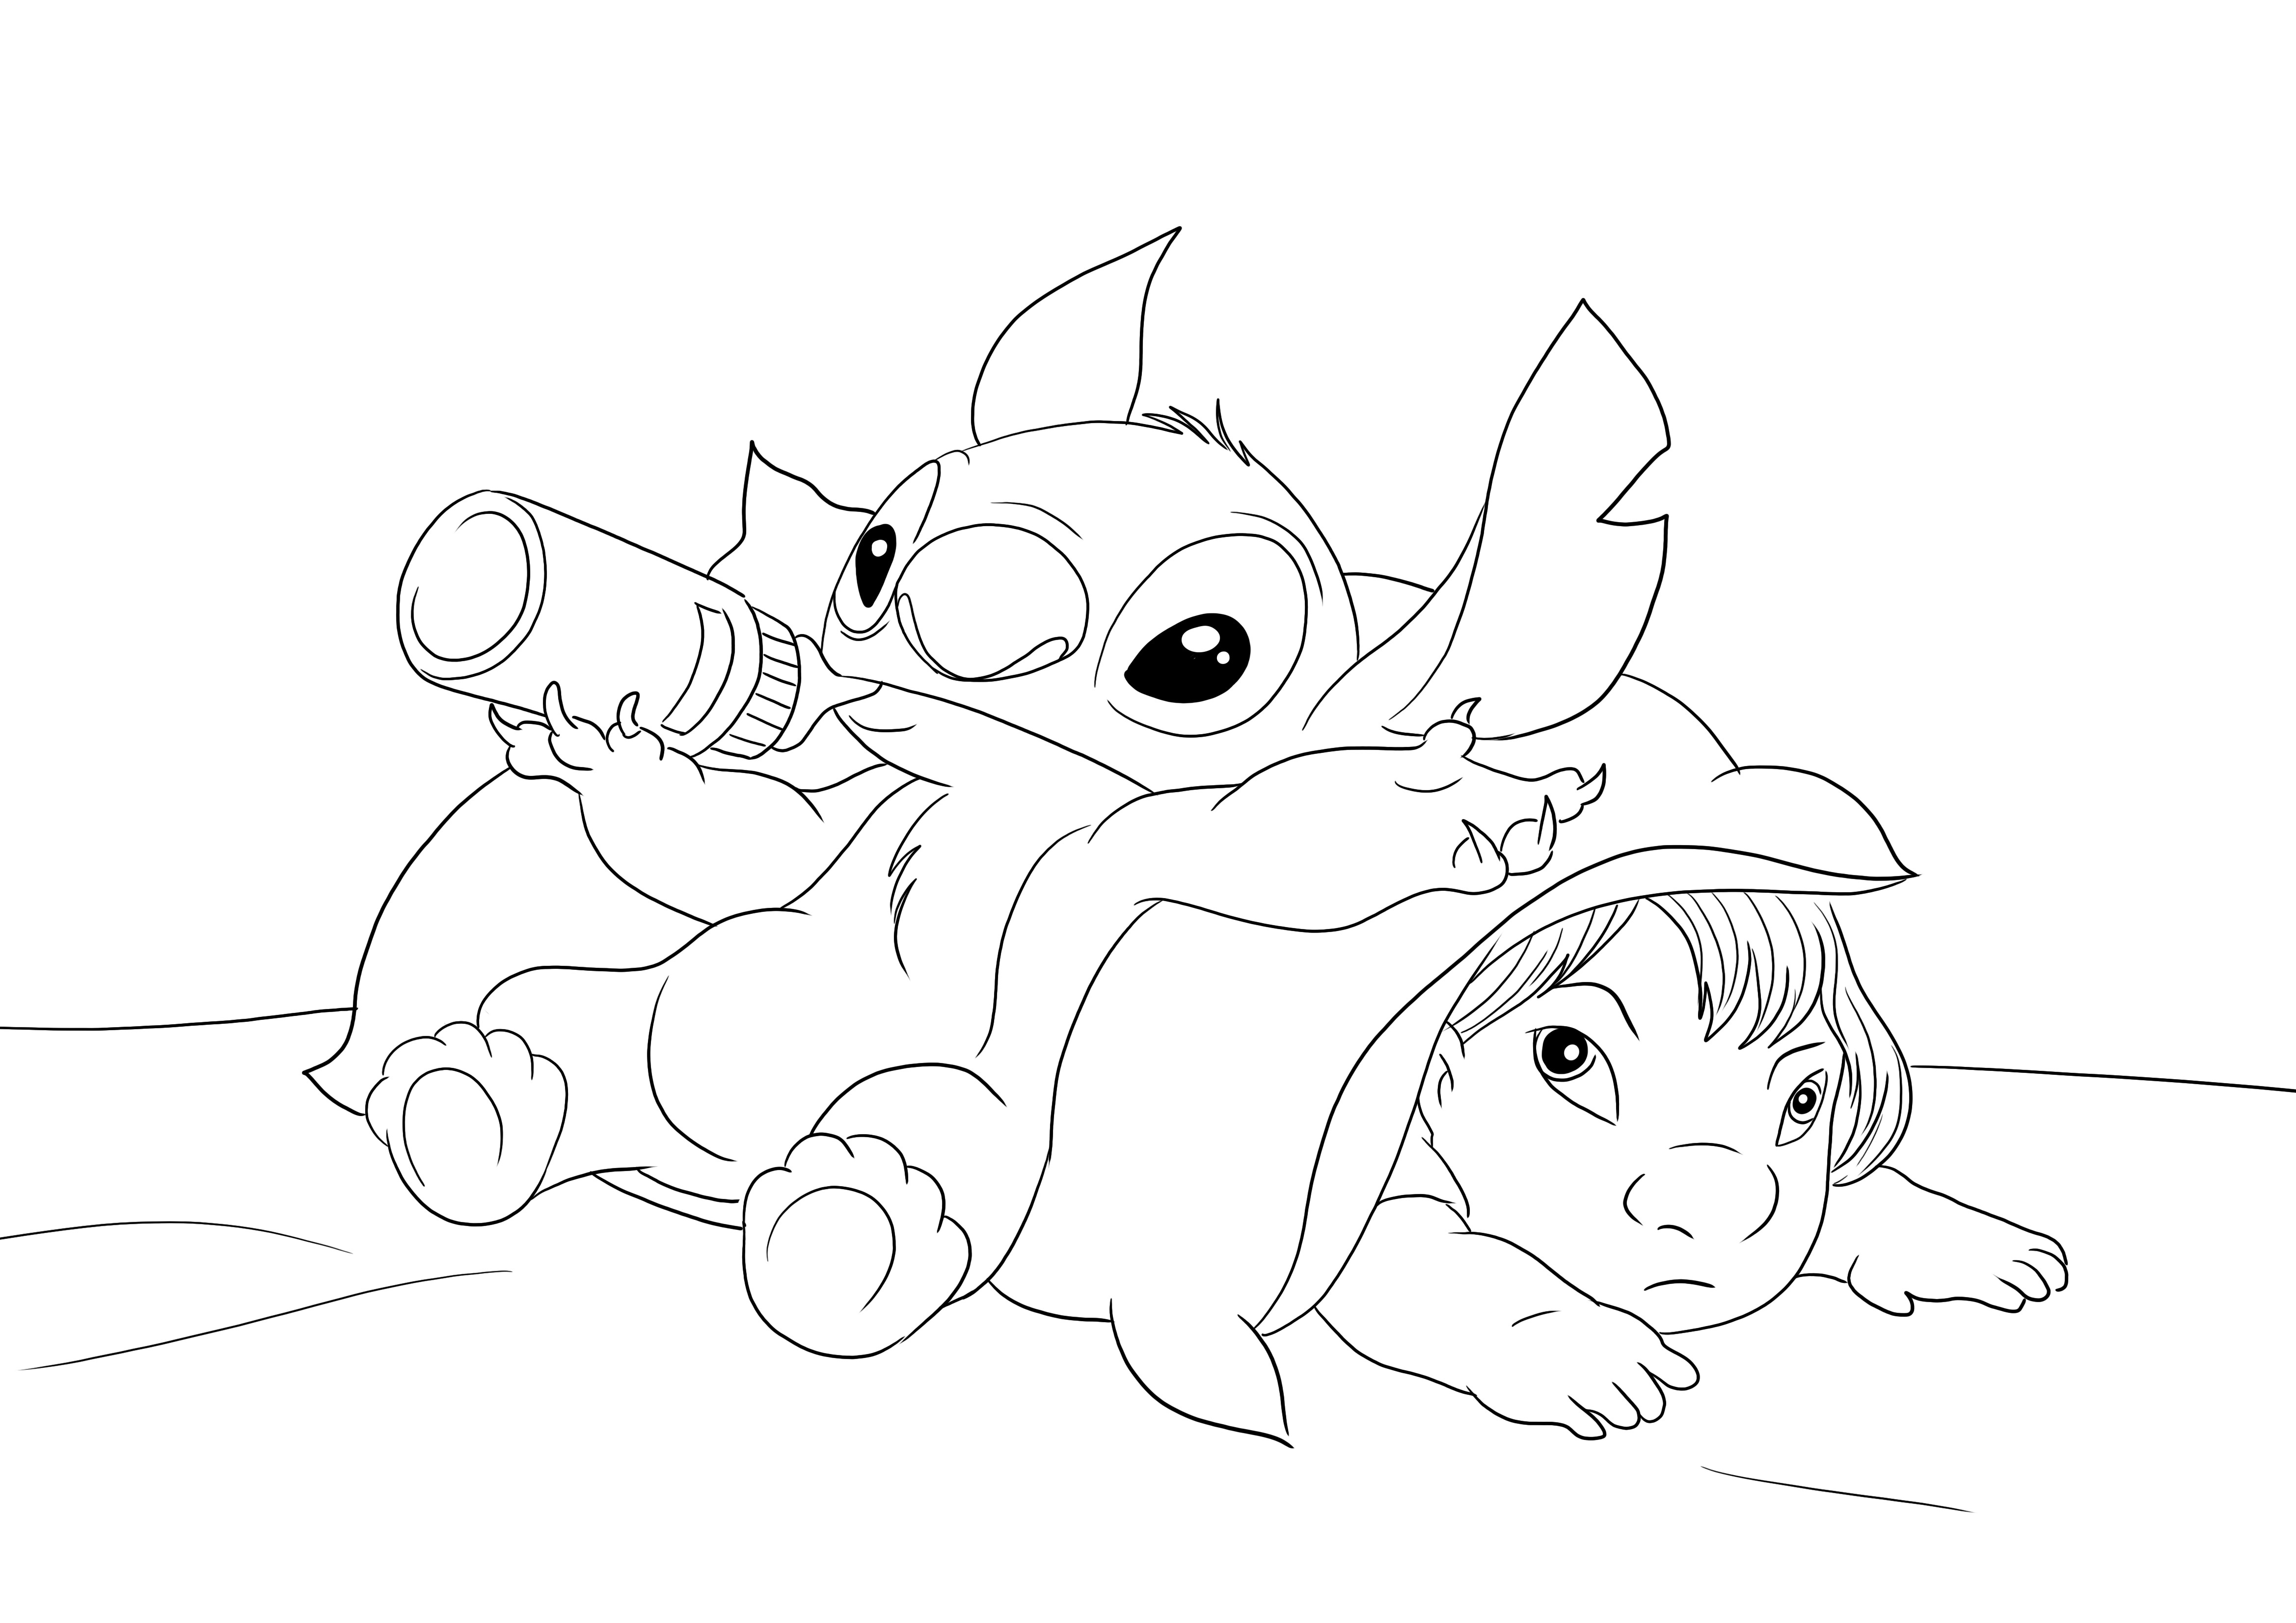 Baby Stitch dan Lilo untuk diunduh secara gratis dan diwarnai untuk anak-anak